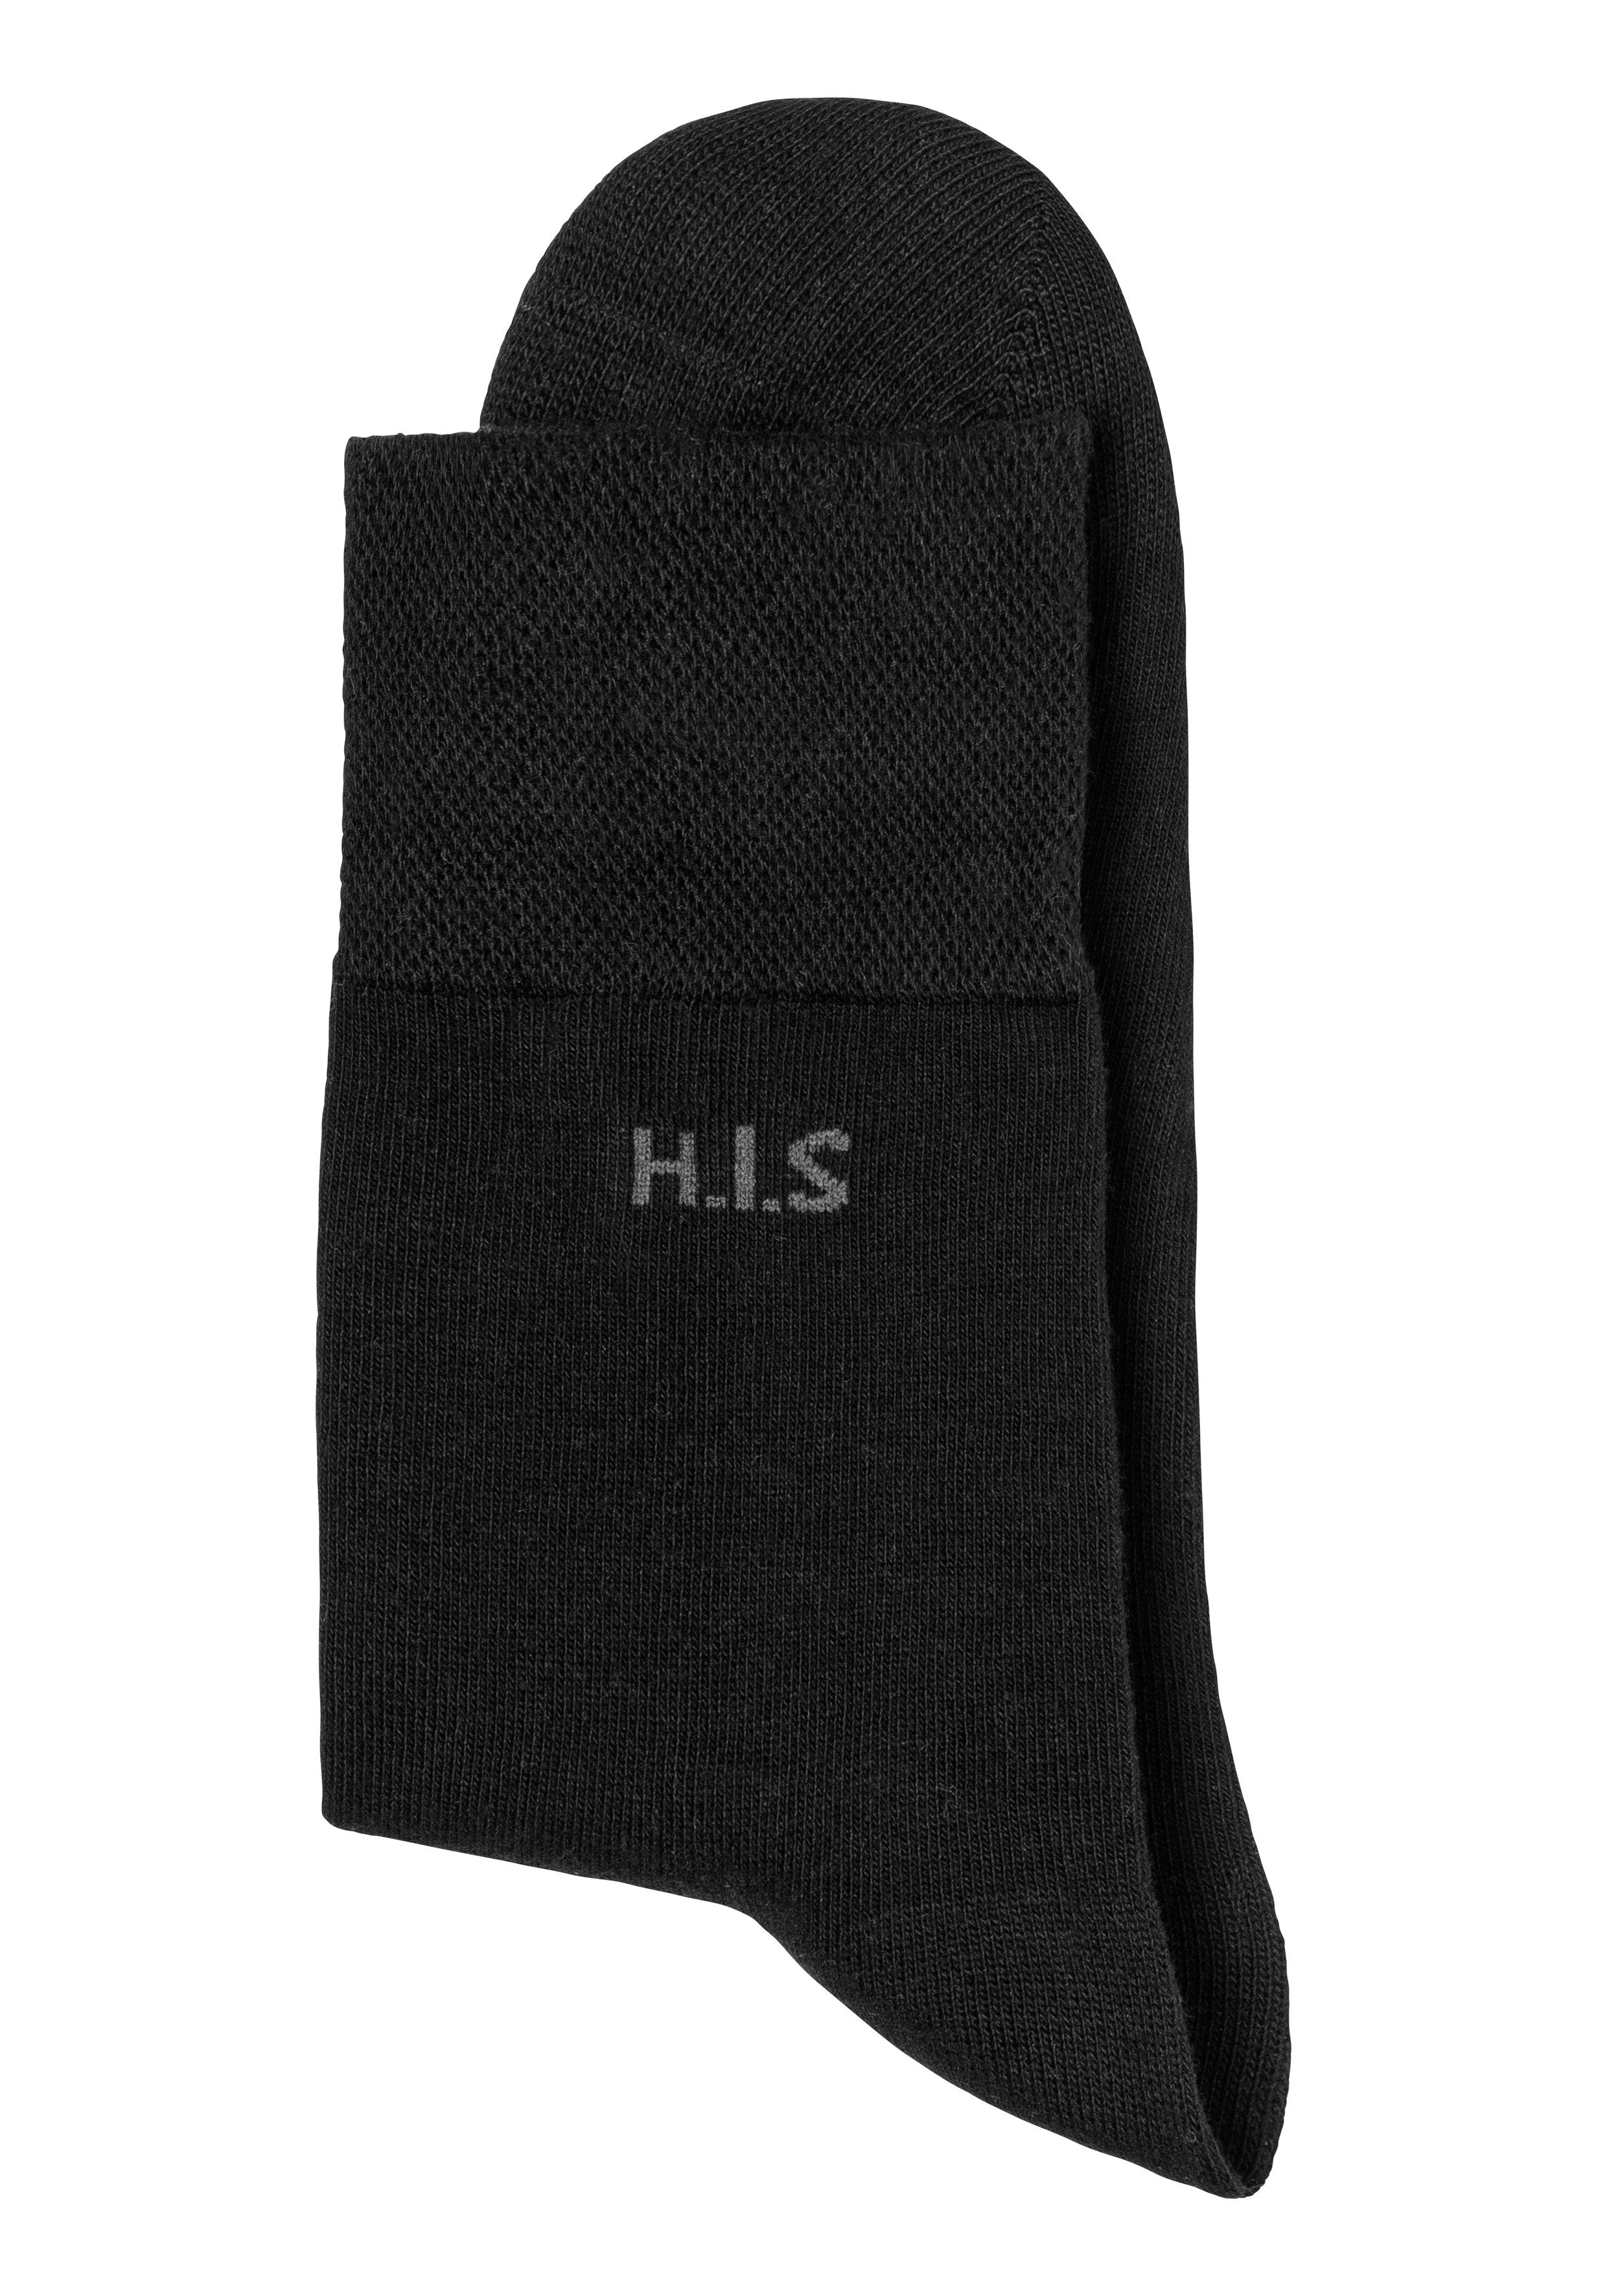 ohne (Packung, Gummi schwarz H.I.S 12-Paar) einschneidendes 12x Socken